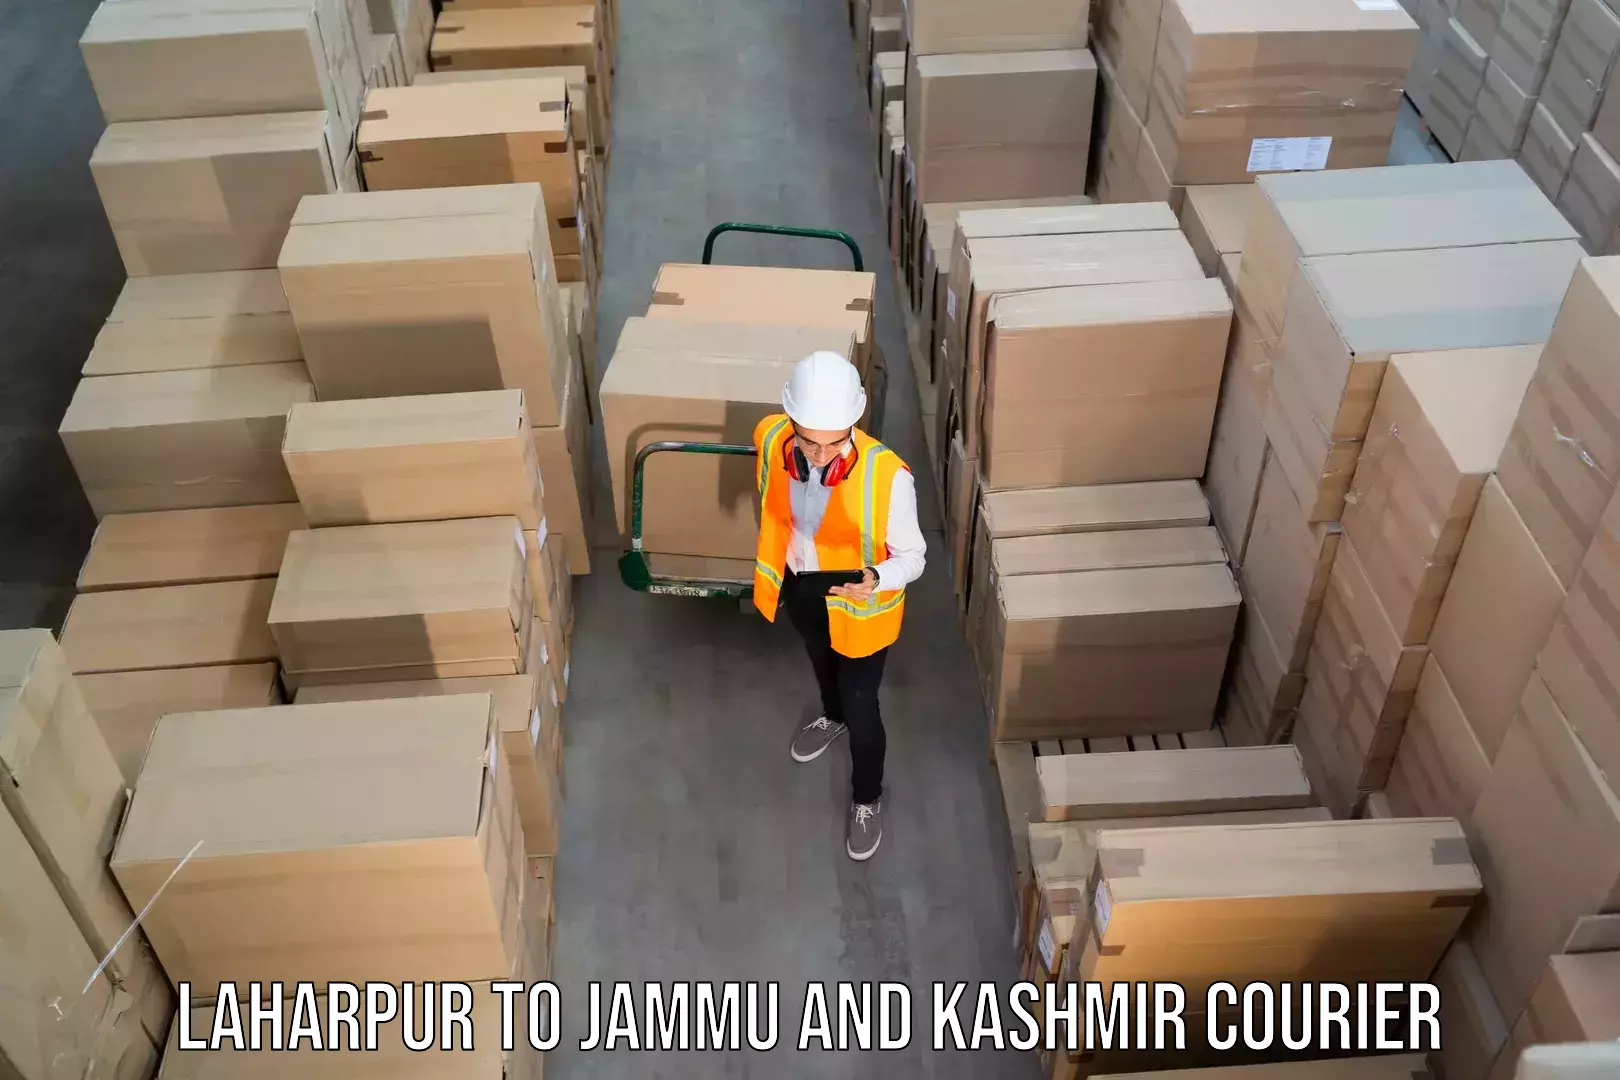 Expedited shipping methods Laharpur to Samba